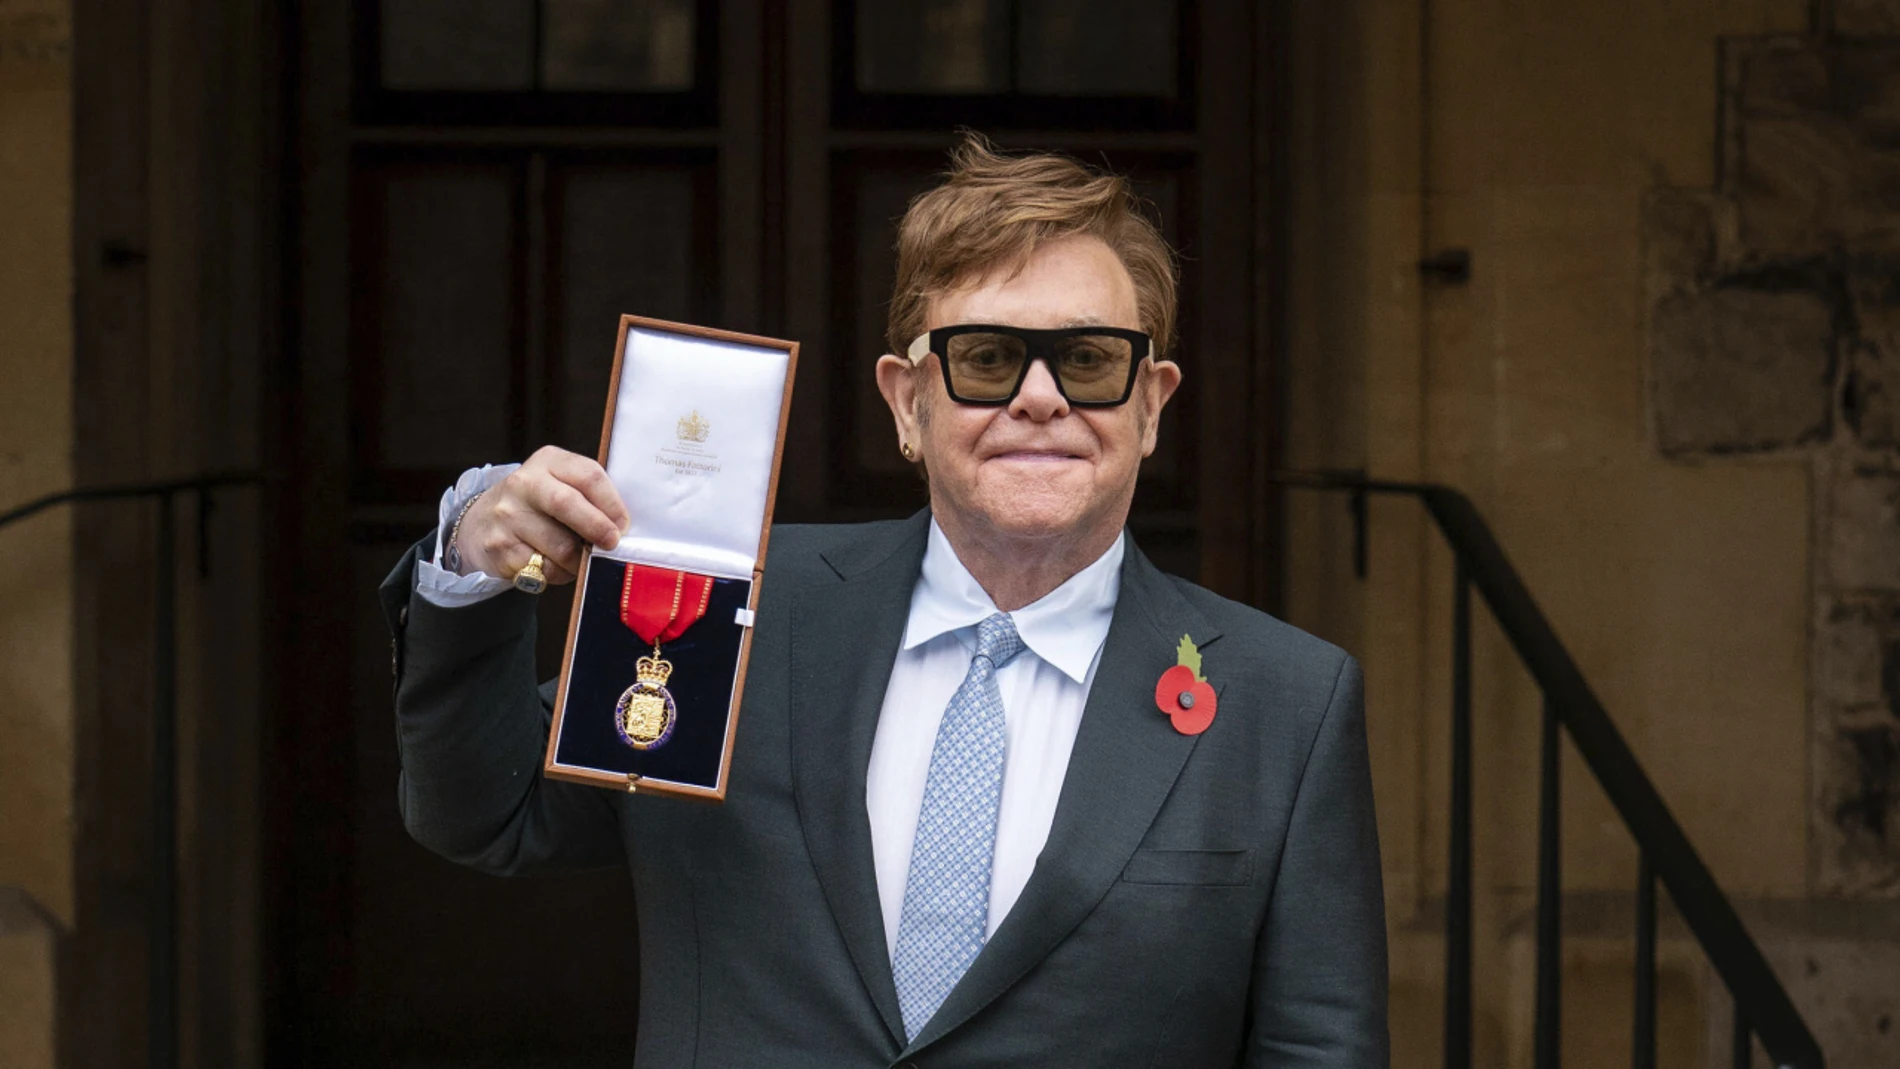 Elton John recibe una medalla de la Corona Británica